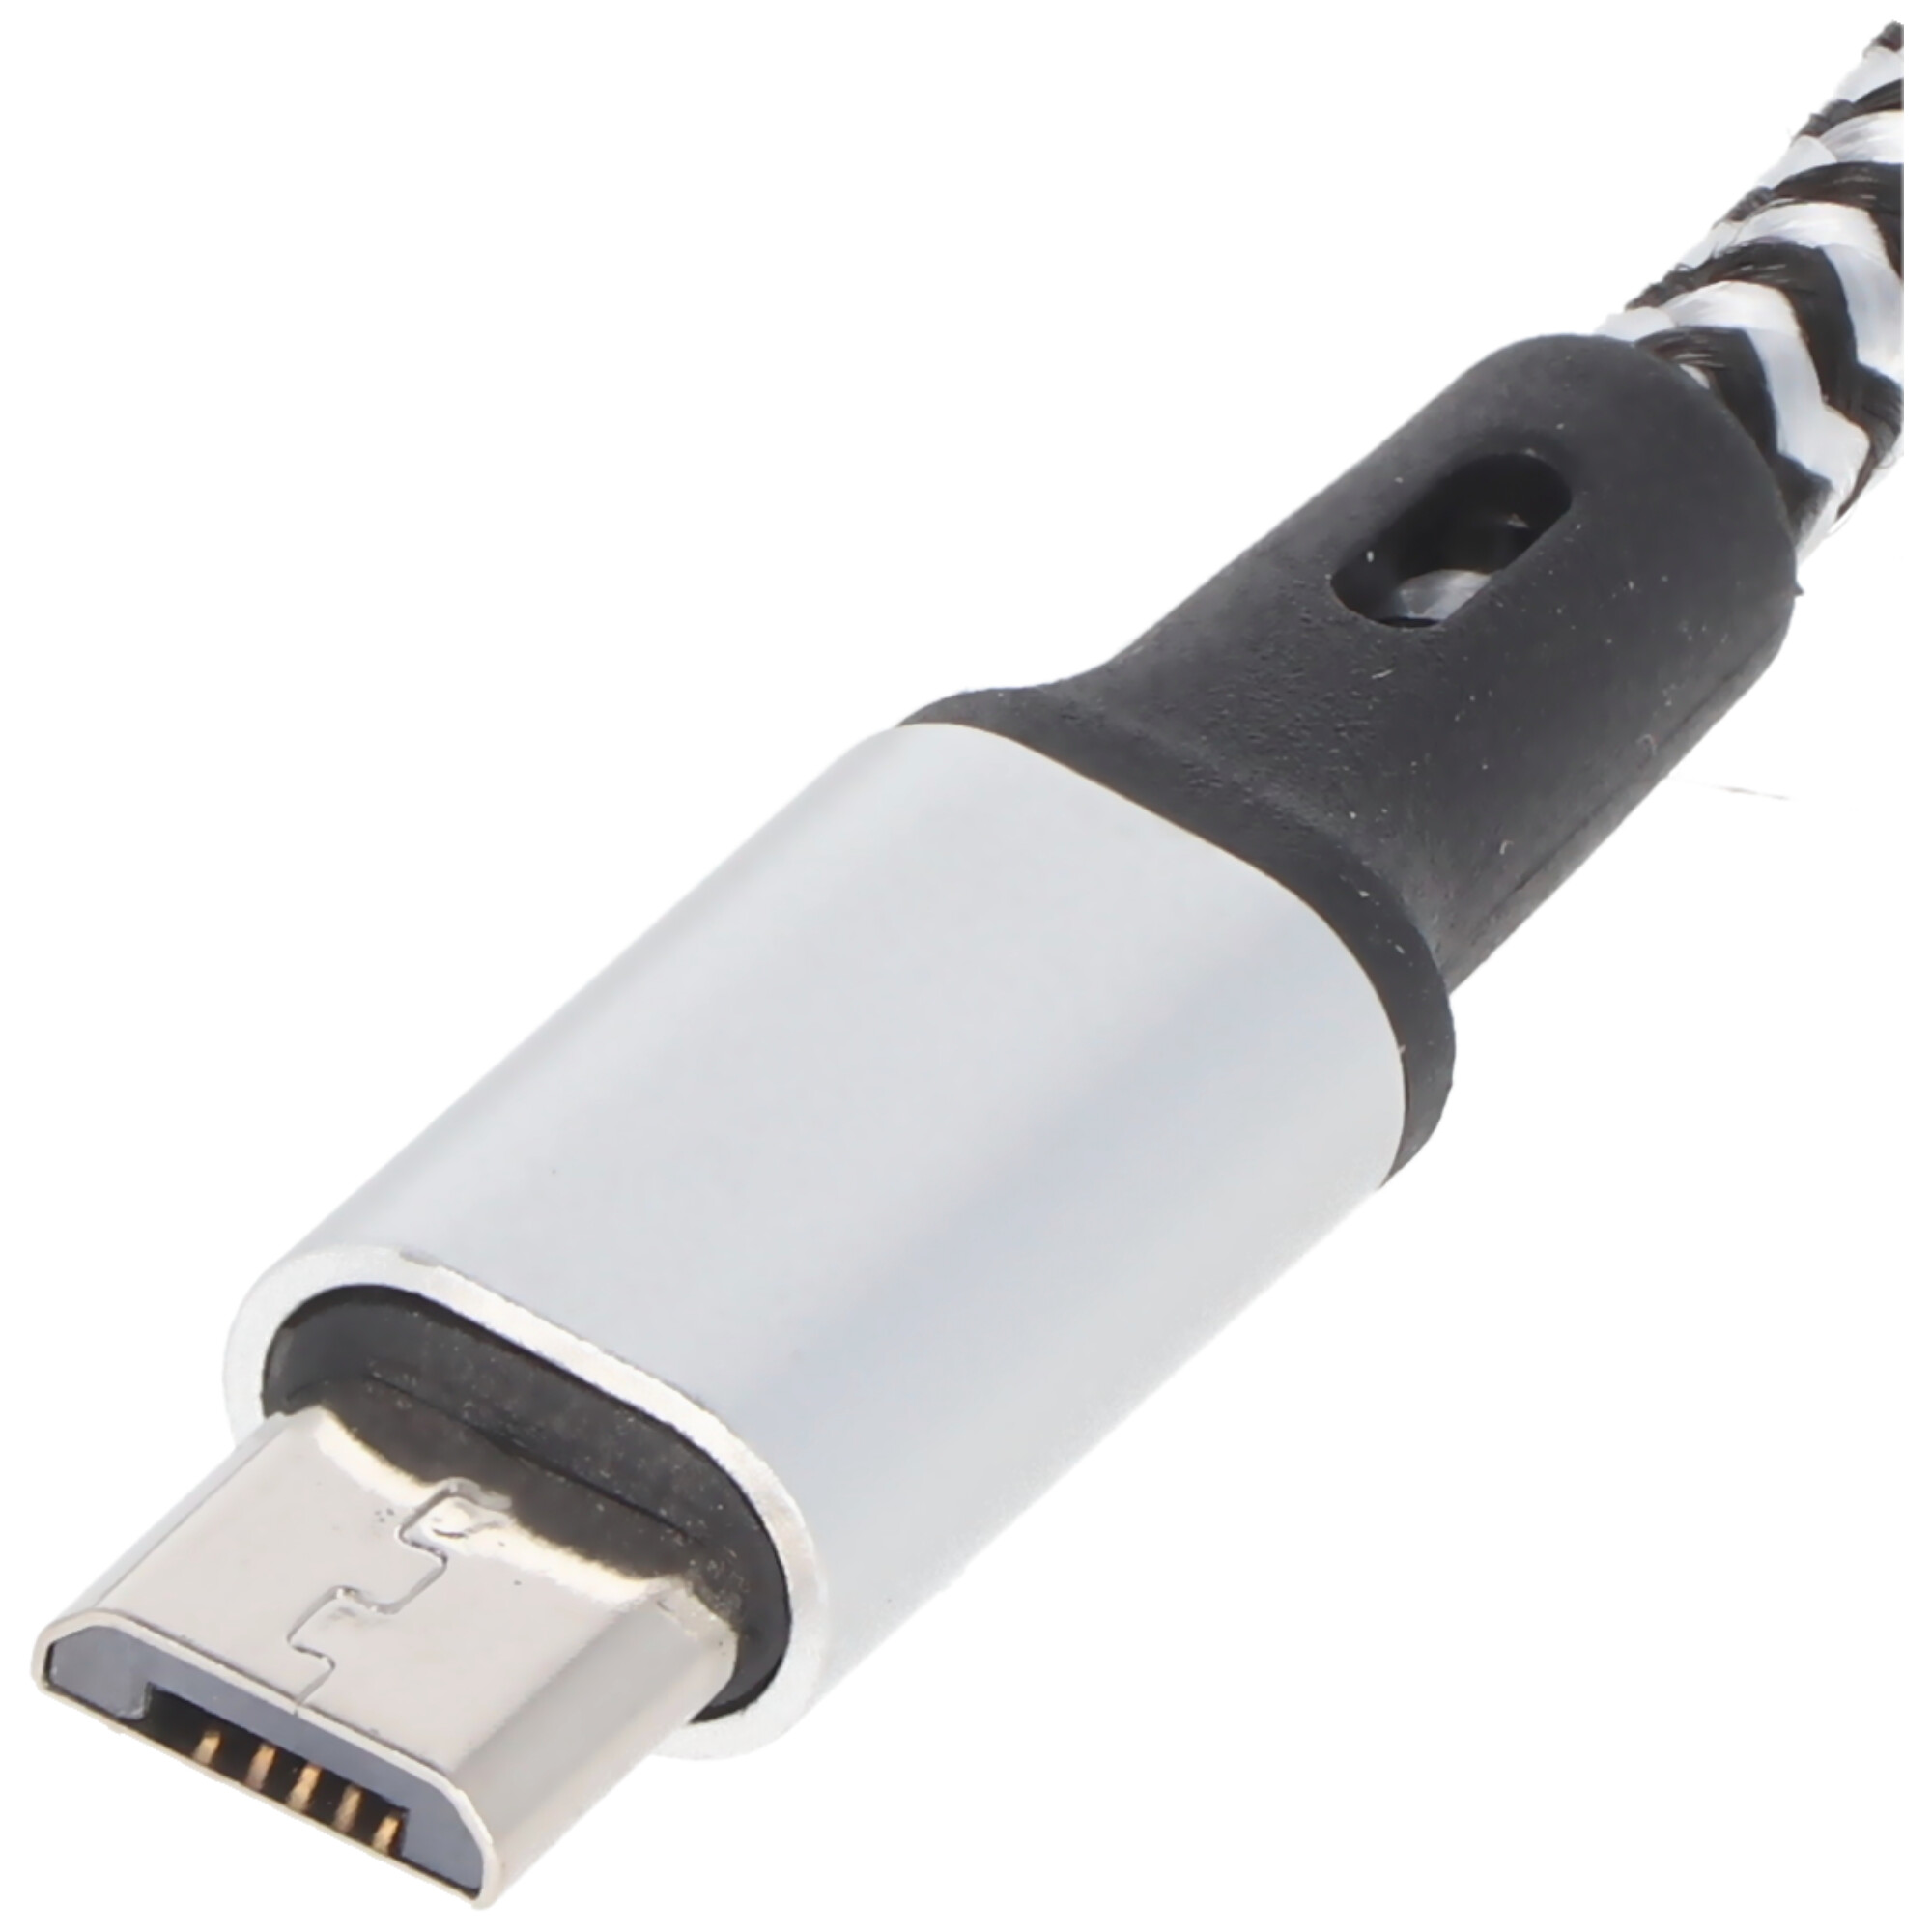 Universal Ladekabel 3in1 für Apple, USB-C, Micro-USB robust mit TPE-Ummantelung, Aluminium-Steckern